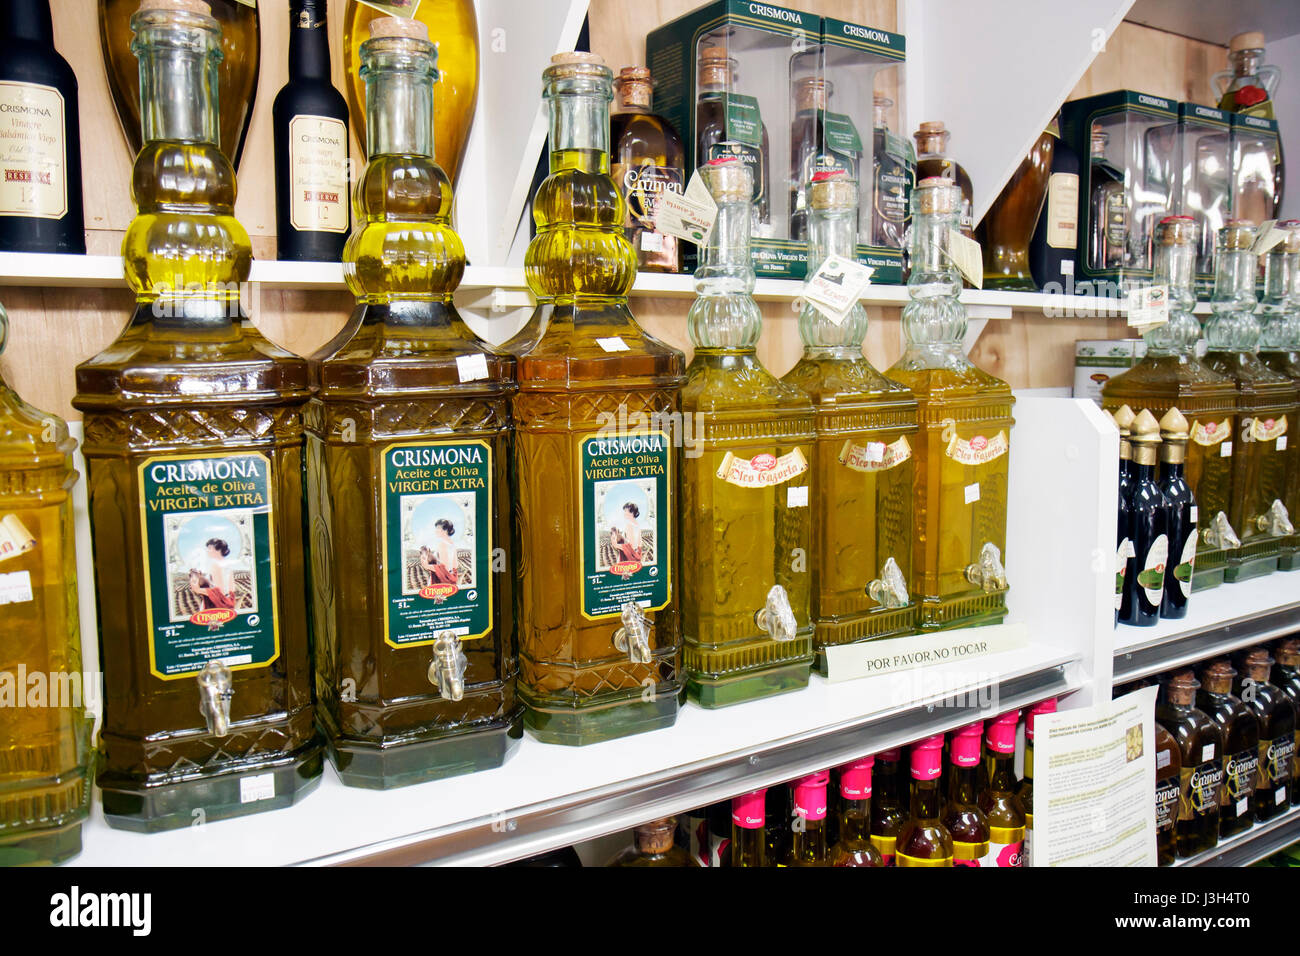 Miami Florida, Delicias de Espana restaurant espagnol gastronomique, importé huile d'olive bouteilles étagères produits afficher la vente, Banque D'Images